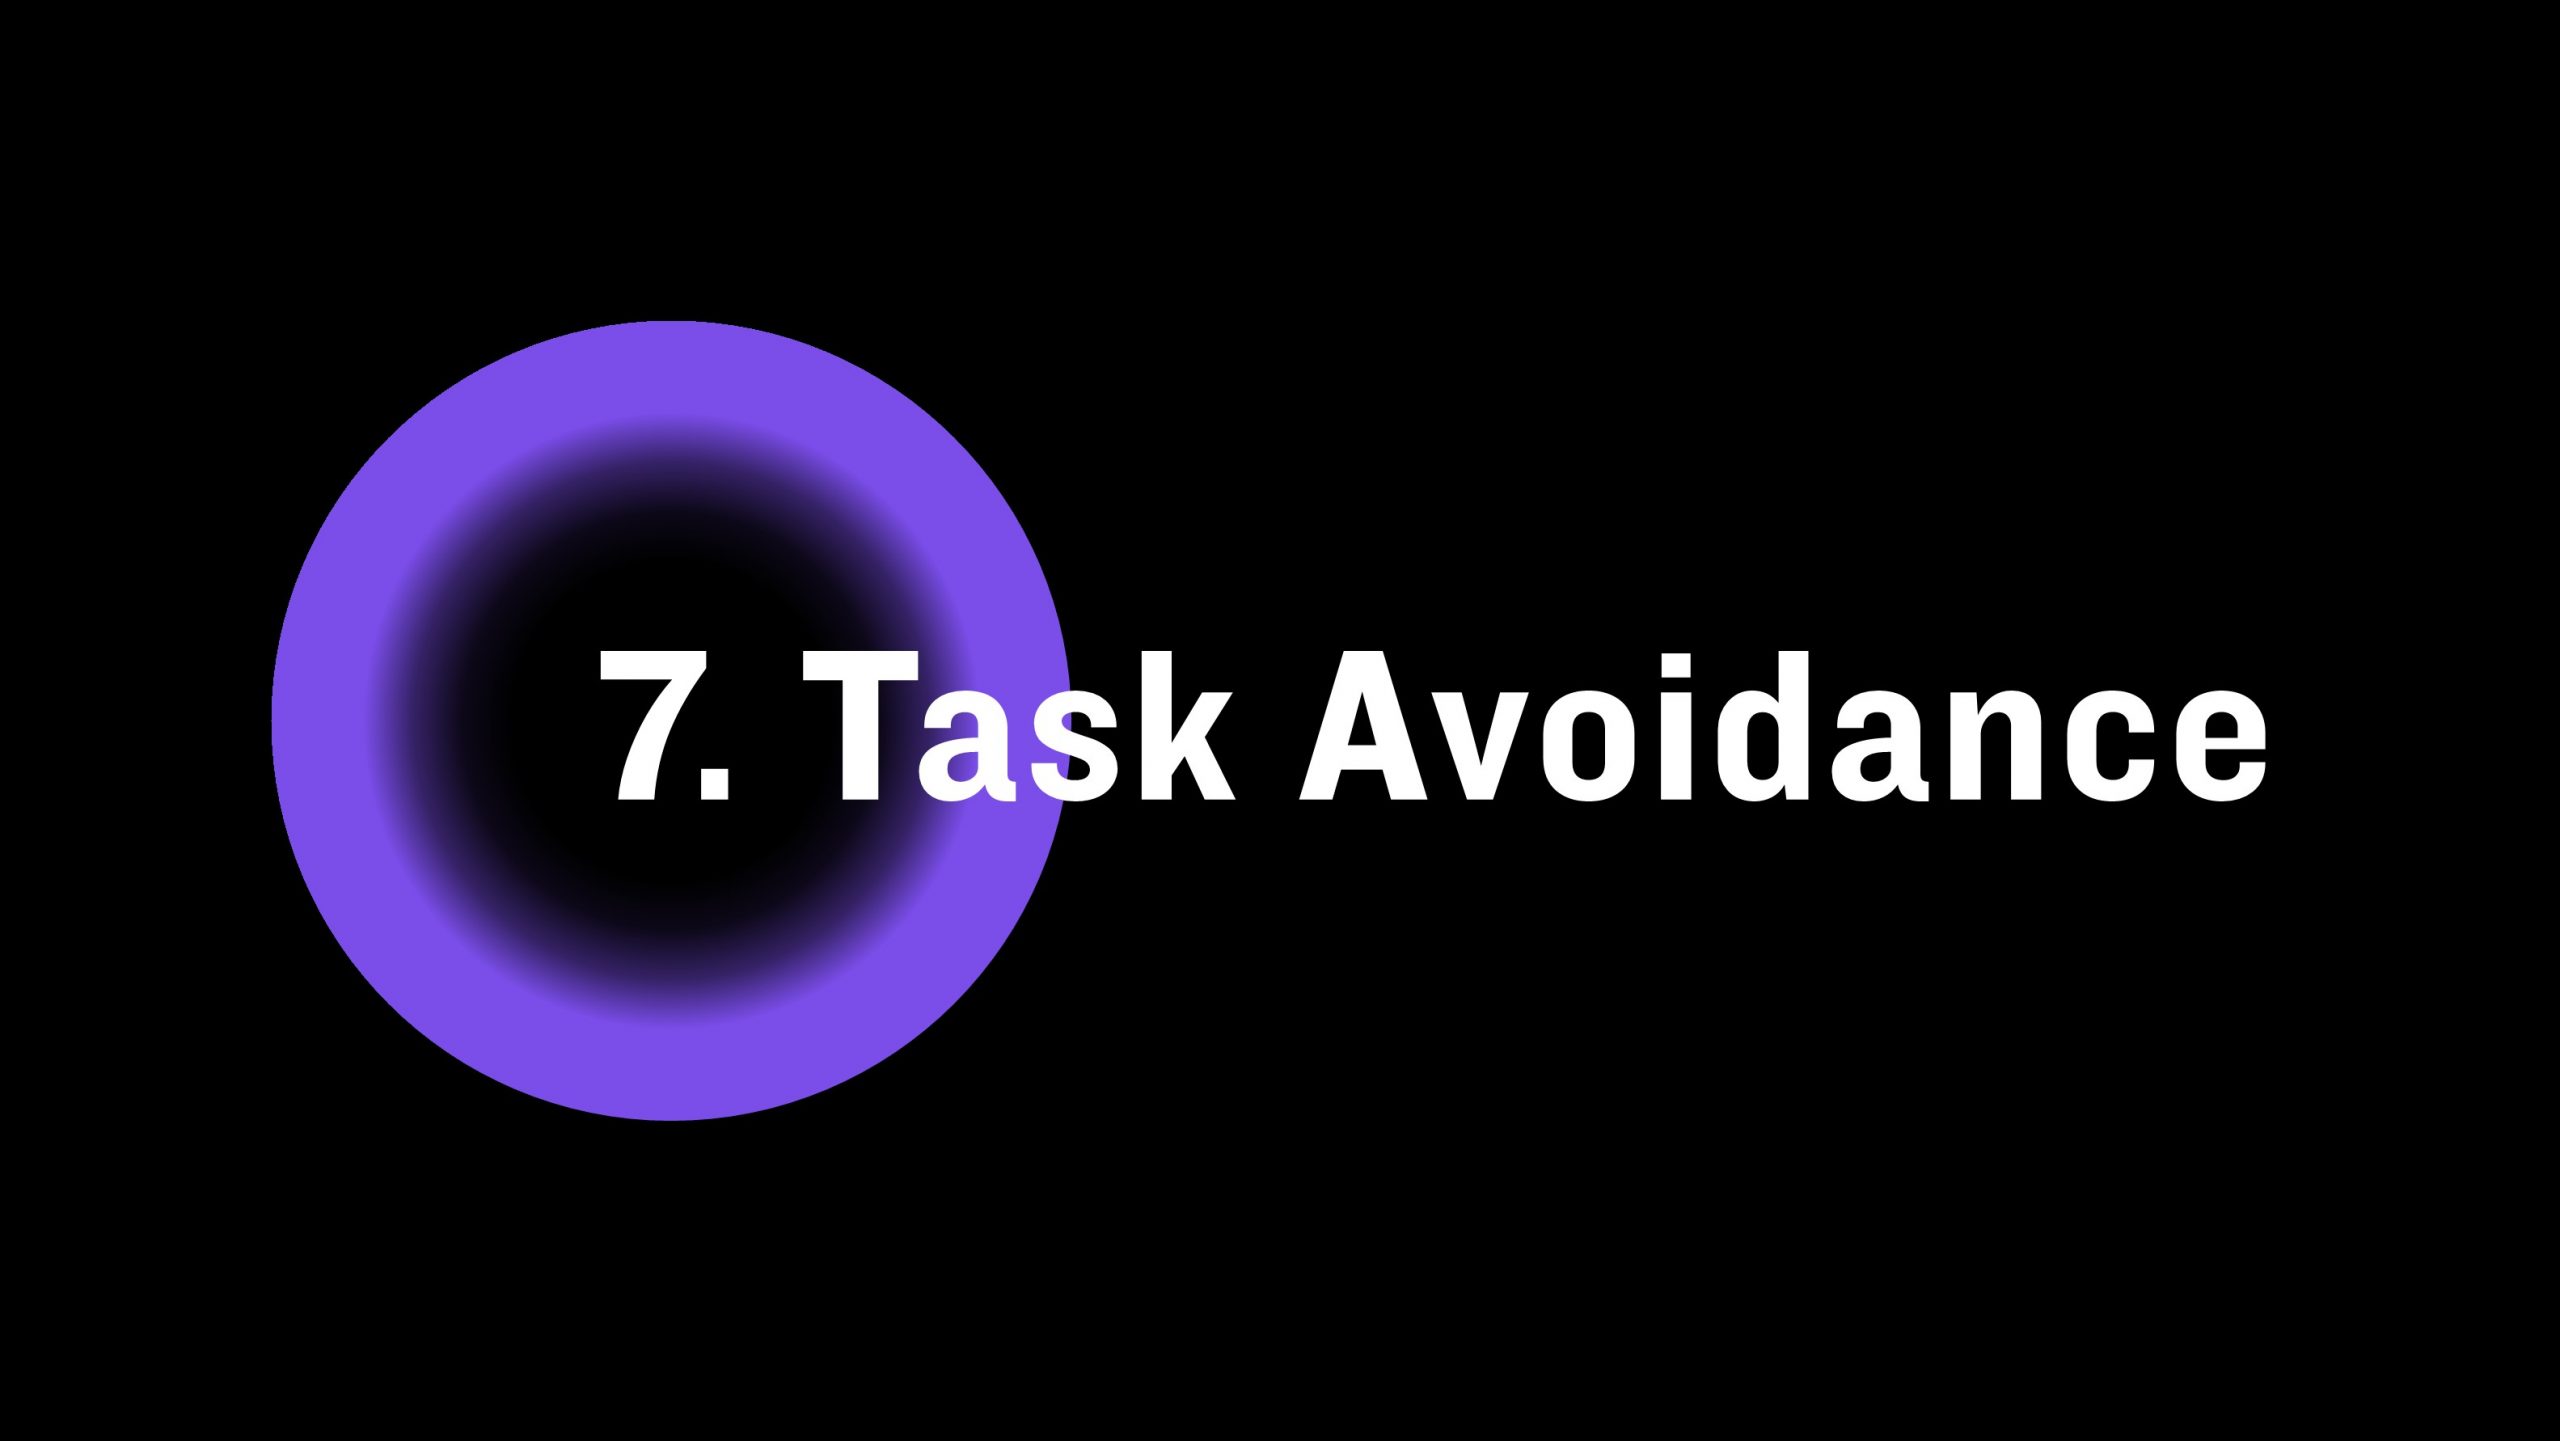 Task avoidance